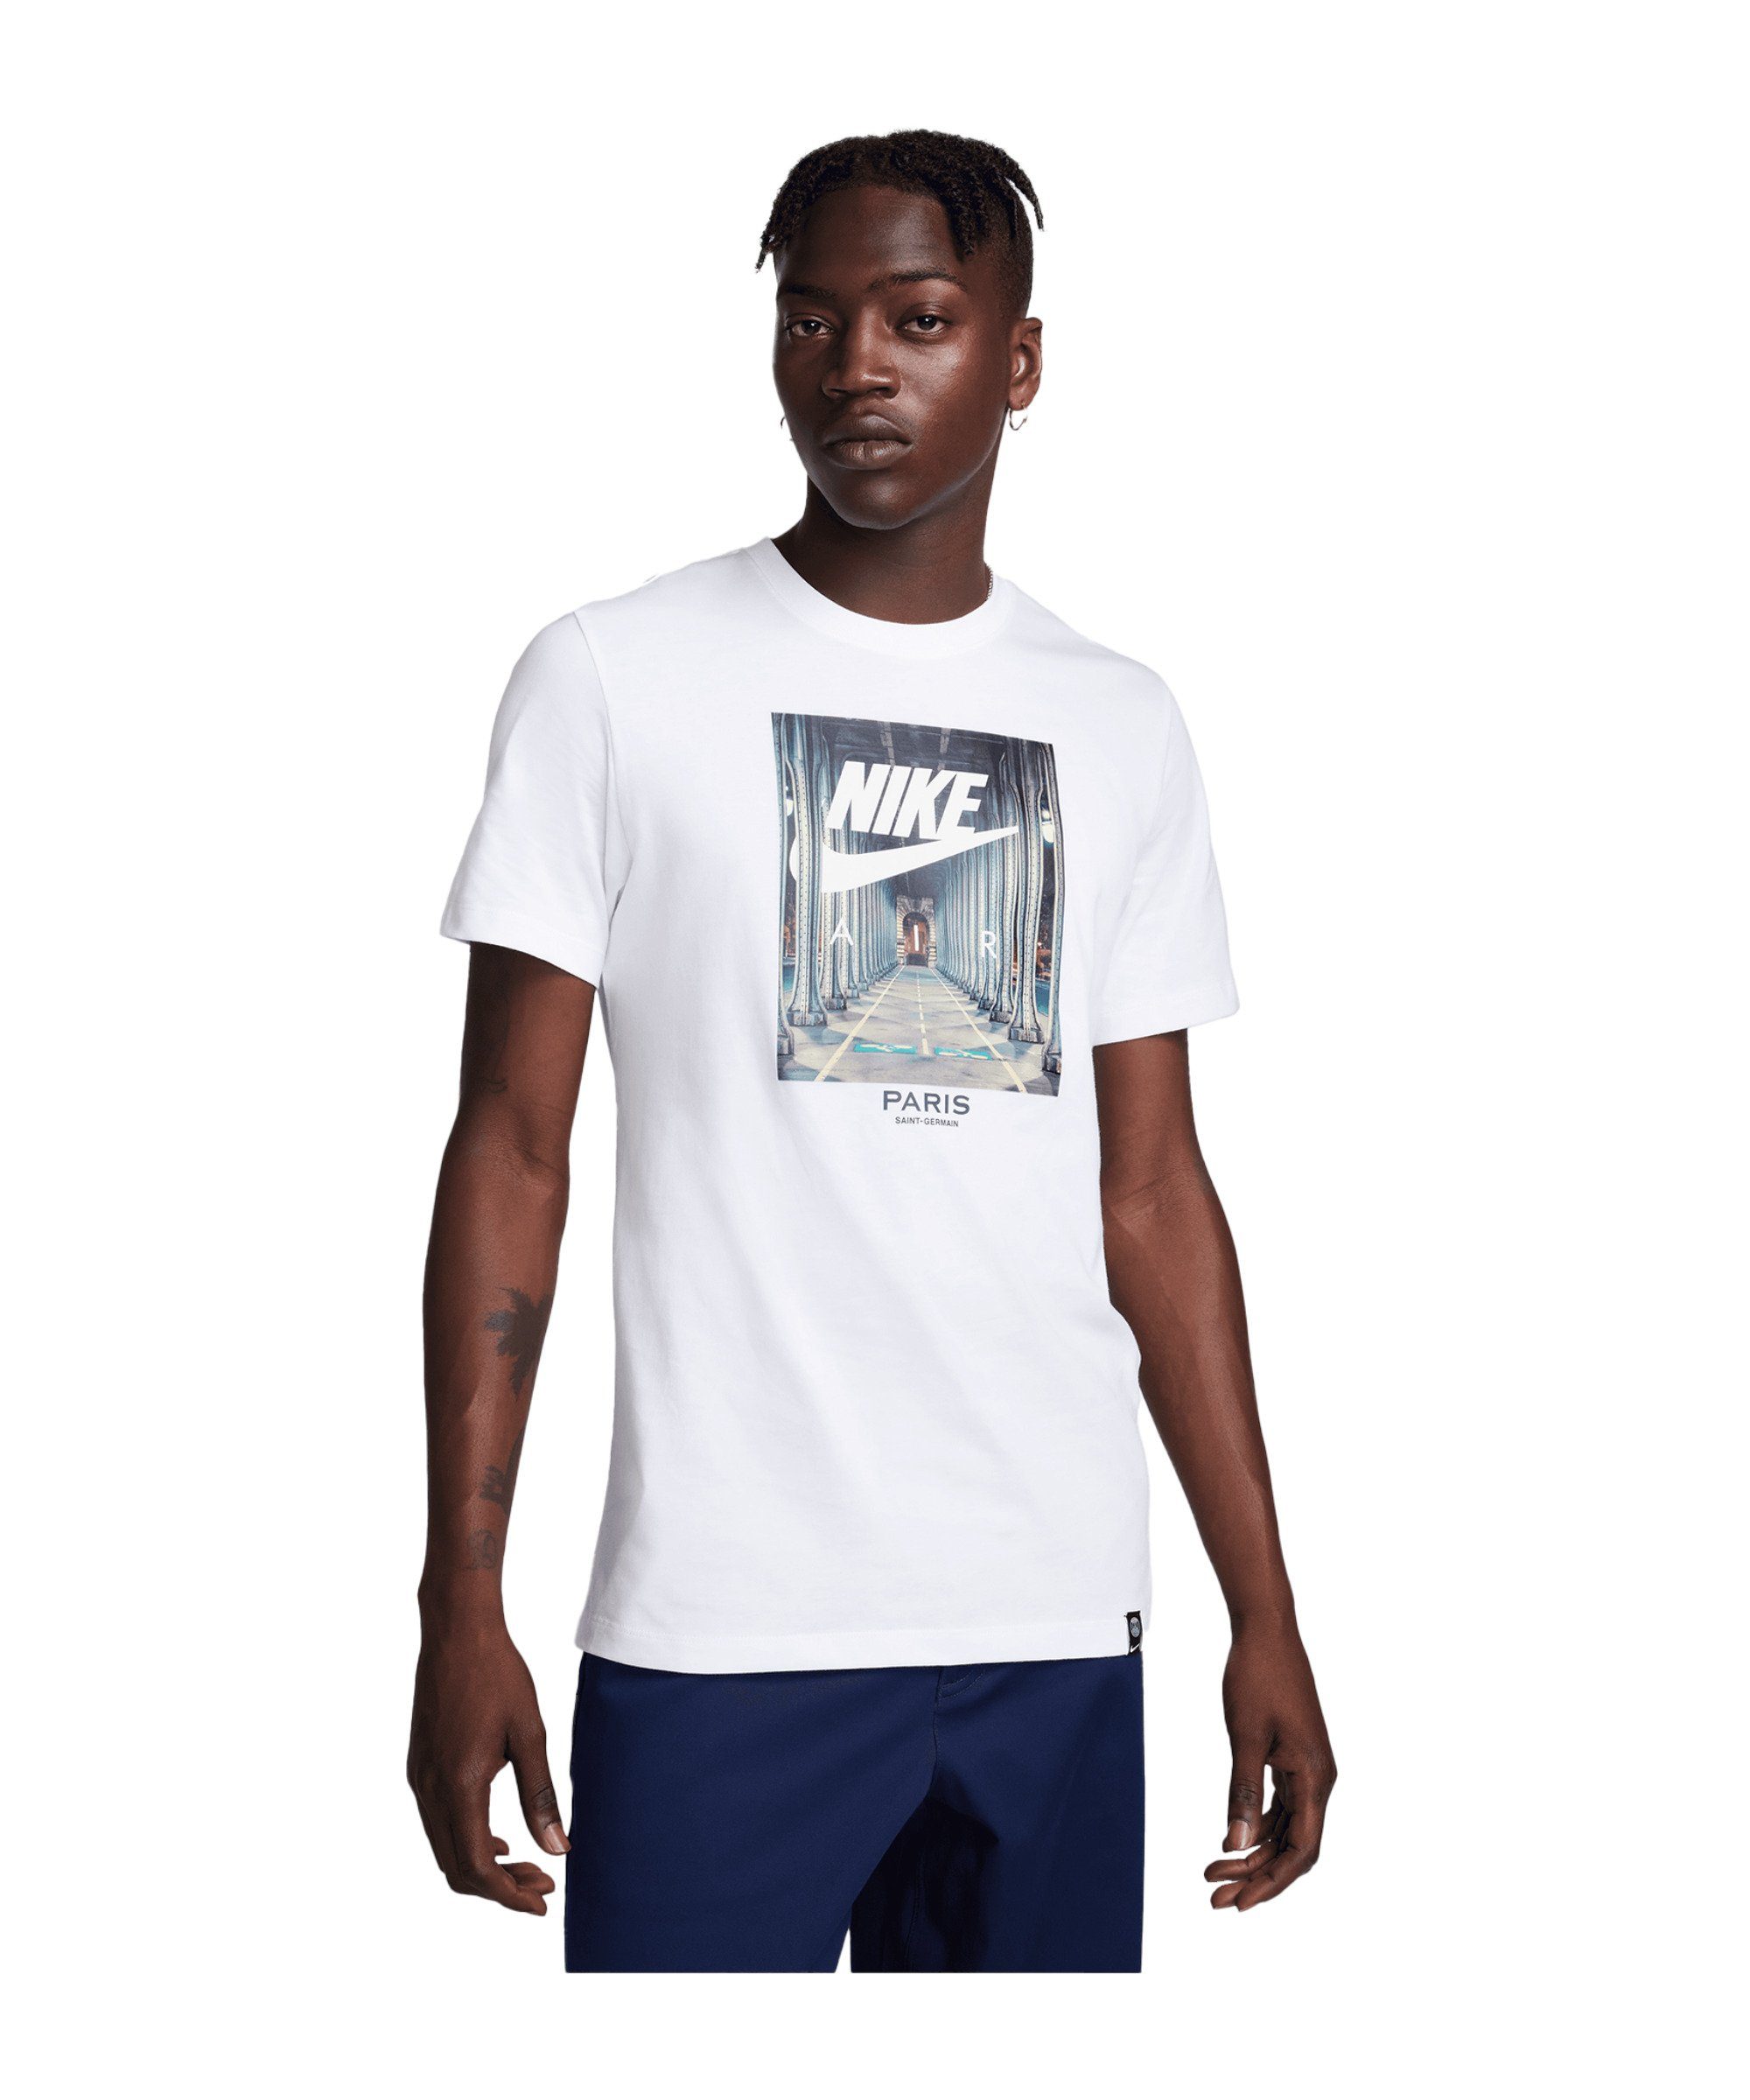 Nike T-Shirt Paris St. Germain Photo T-Shirt default